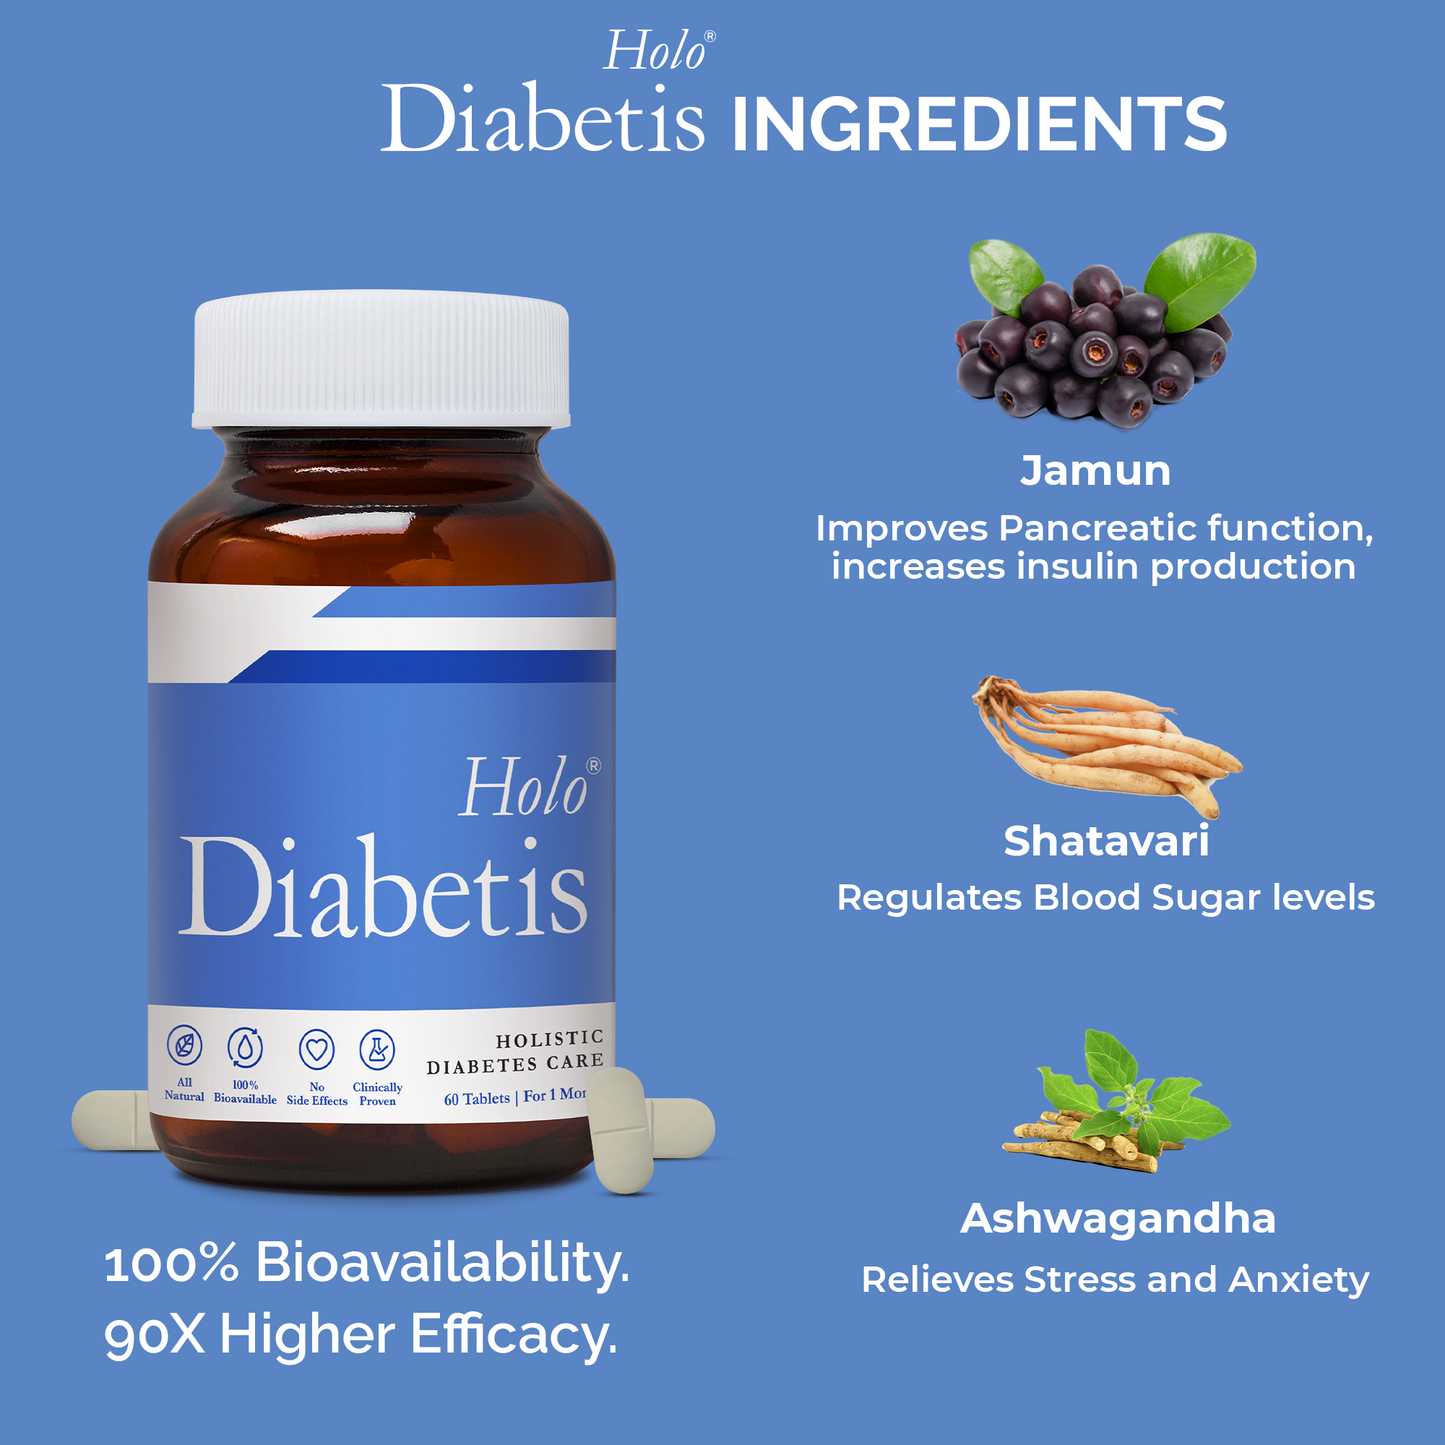 type 2 diabetes tablets and it's ingredients(Jamun, shatavari, ashwagandha)